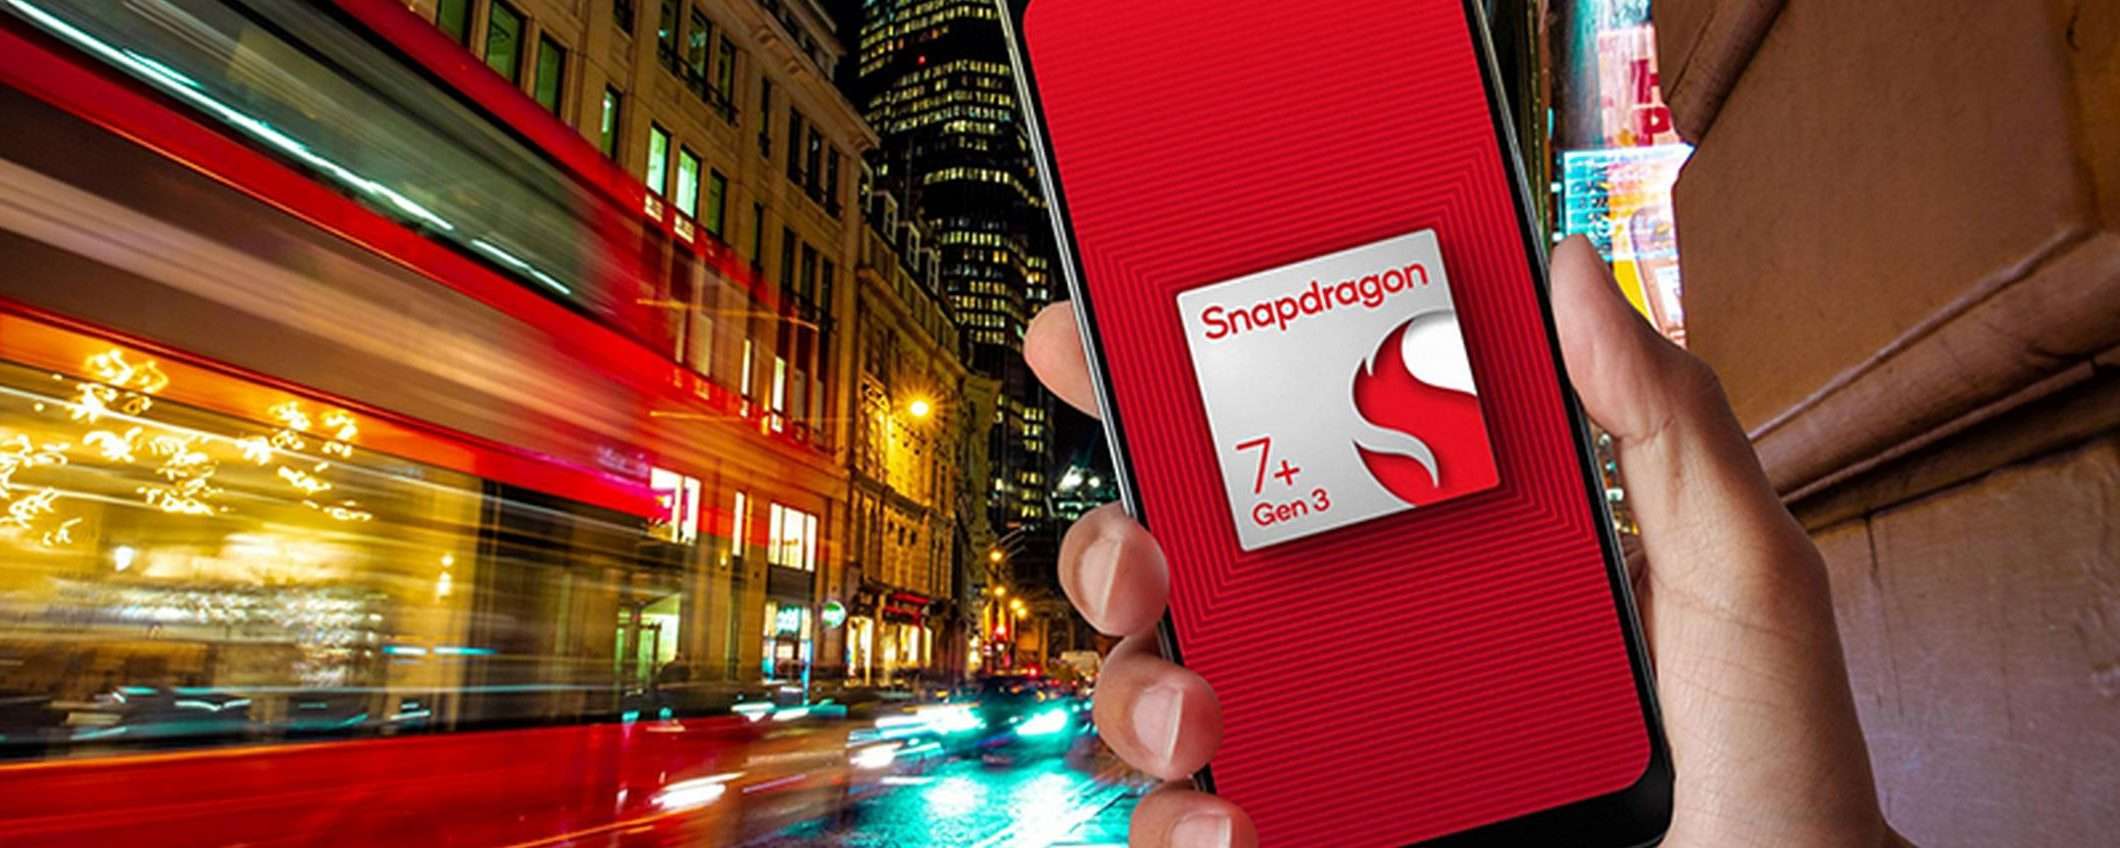 Snapdragon 7+ Gen 3: IA on-device e Wi-Fi 7